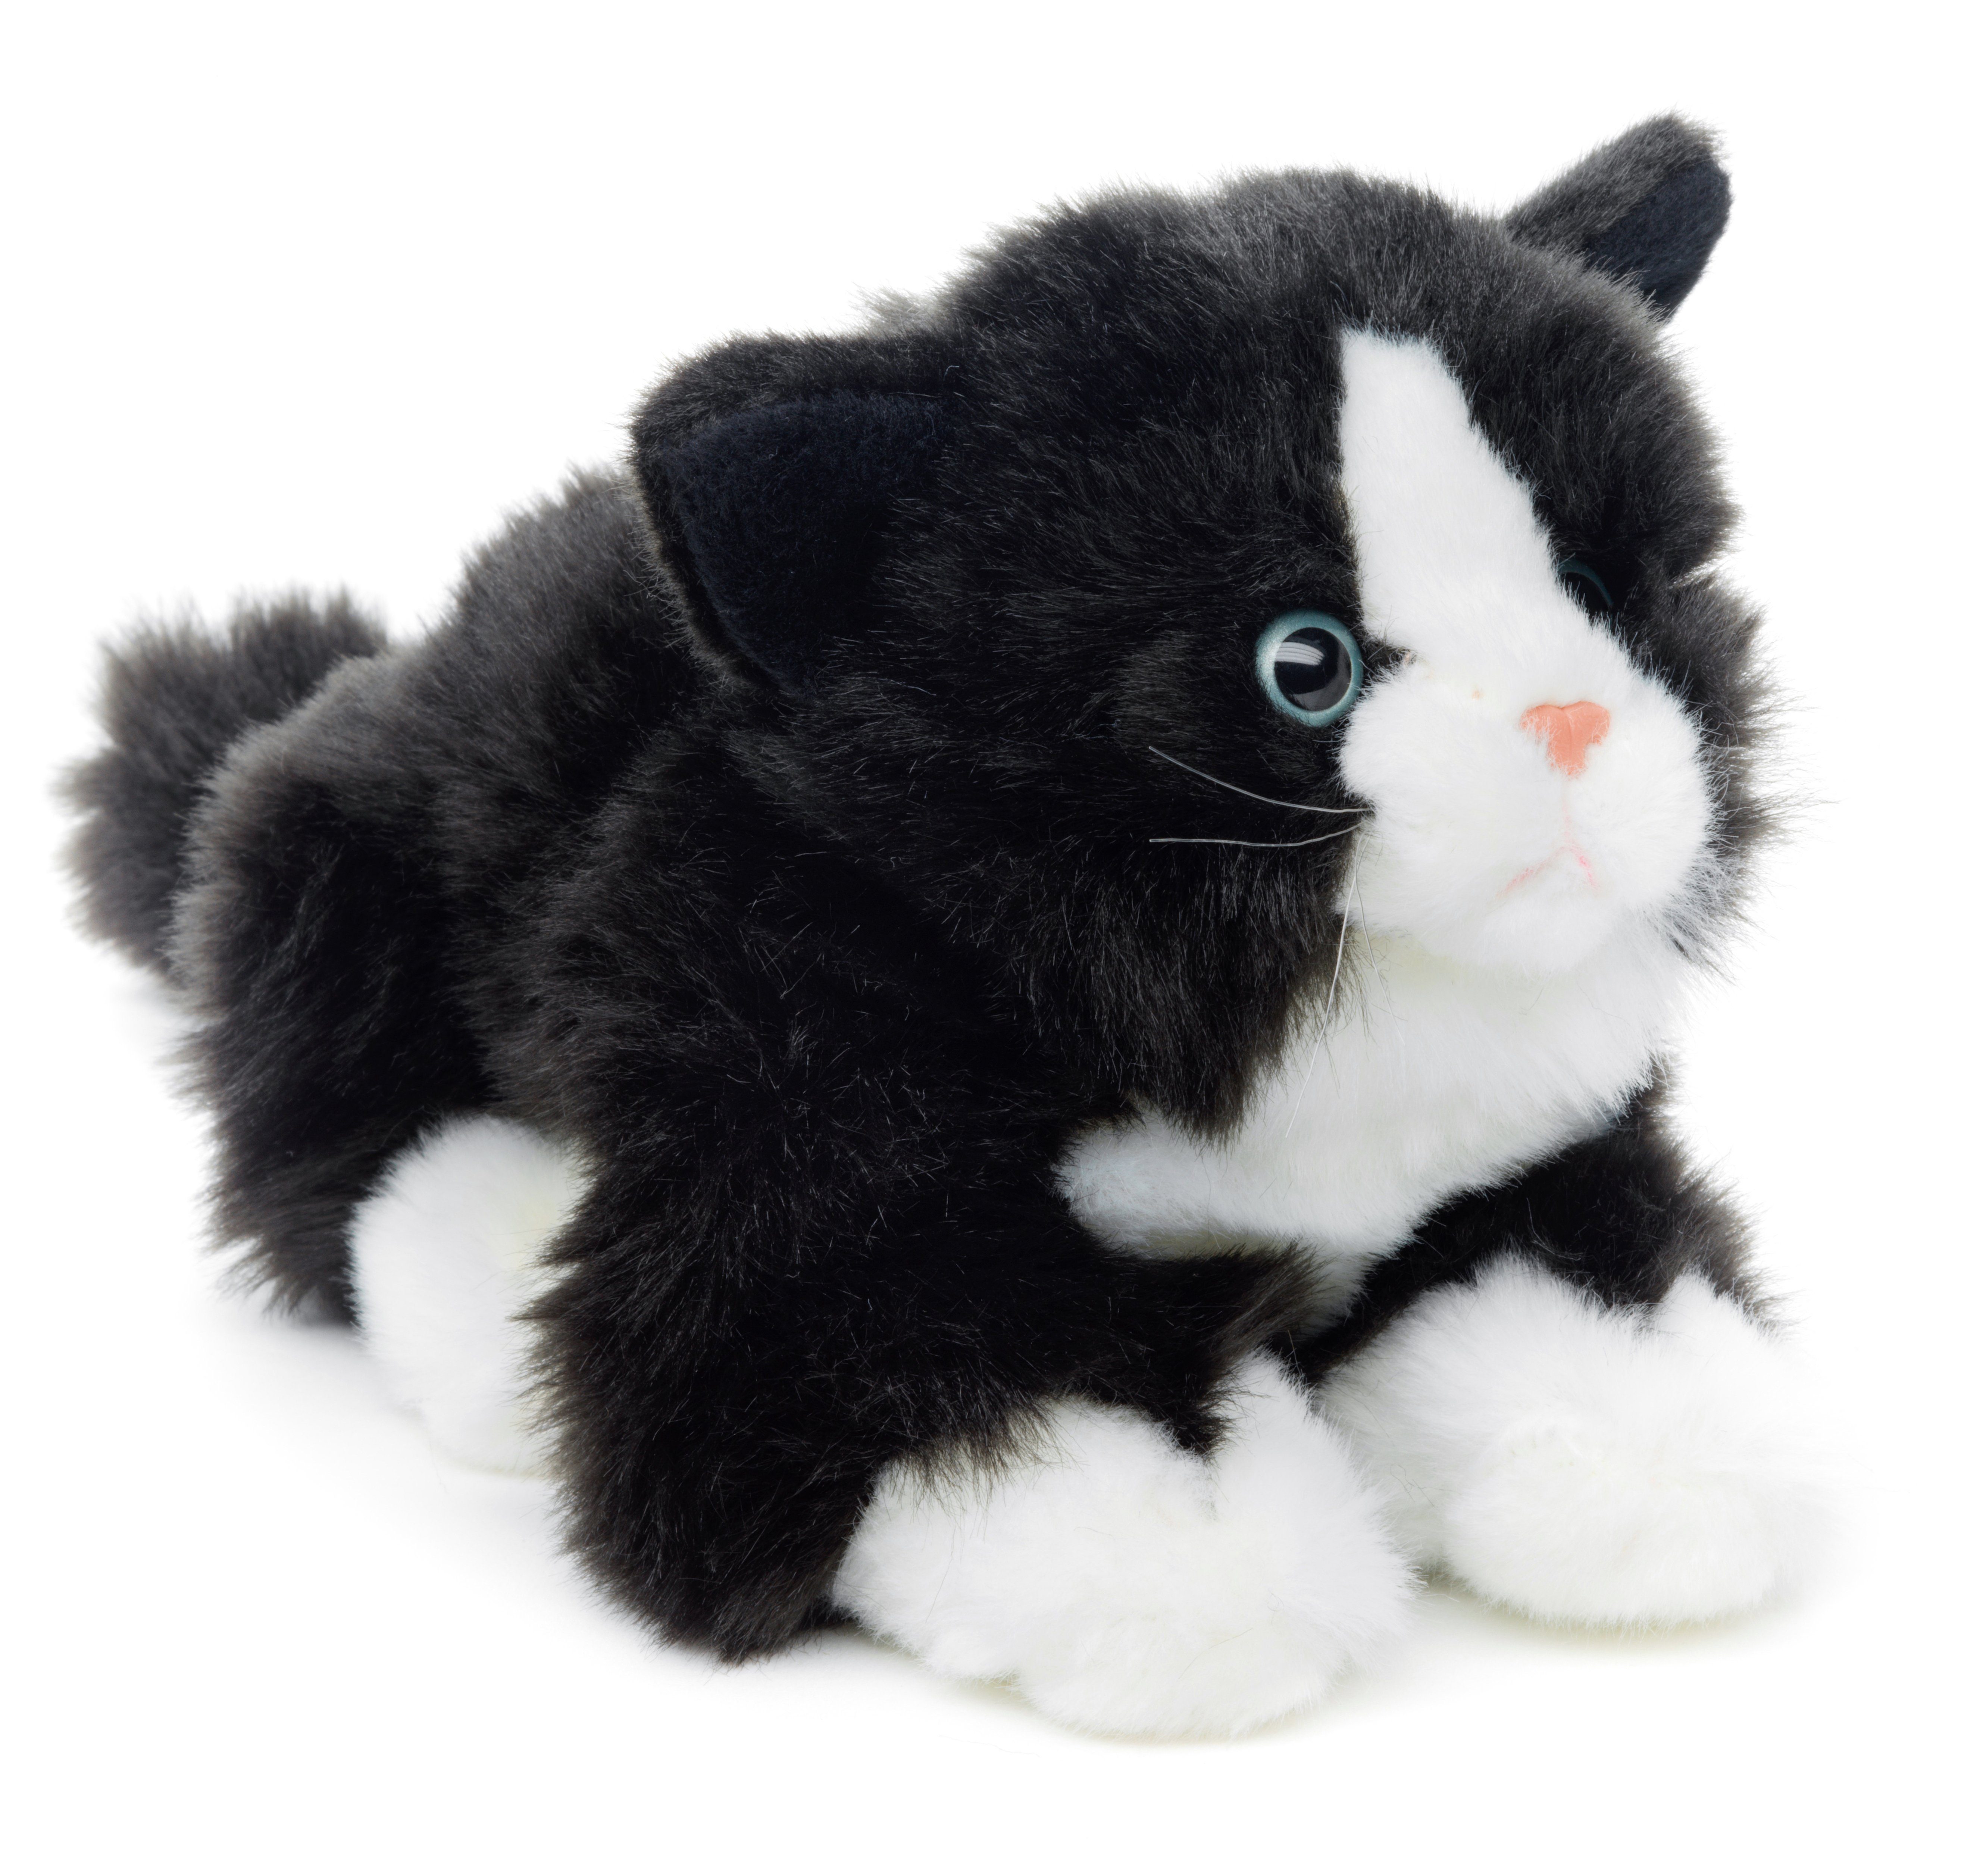 Uni-Toys Kuscheltier Katze mit Stimme (schwarz-weiß) - 20 cm (Länge) - Plüsch, Plüschtier, zu 100 % recyceltes Füllmaterial